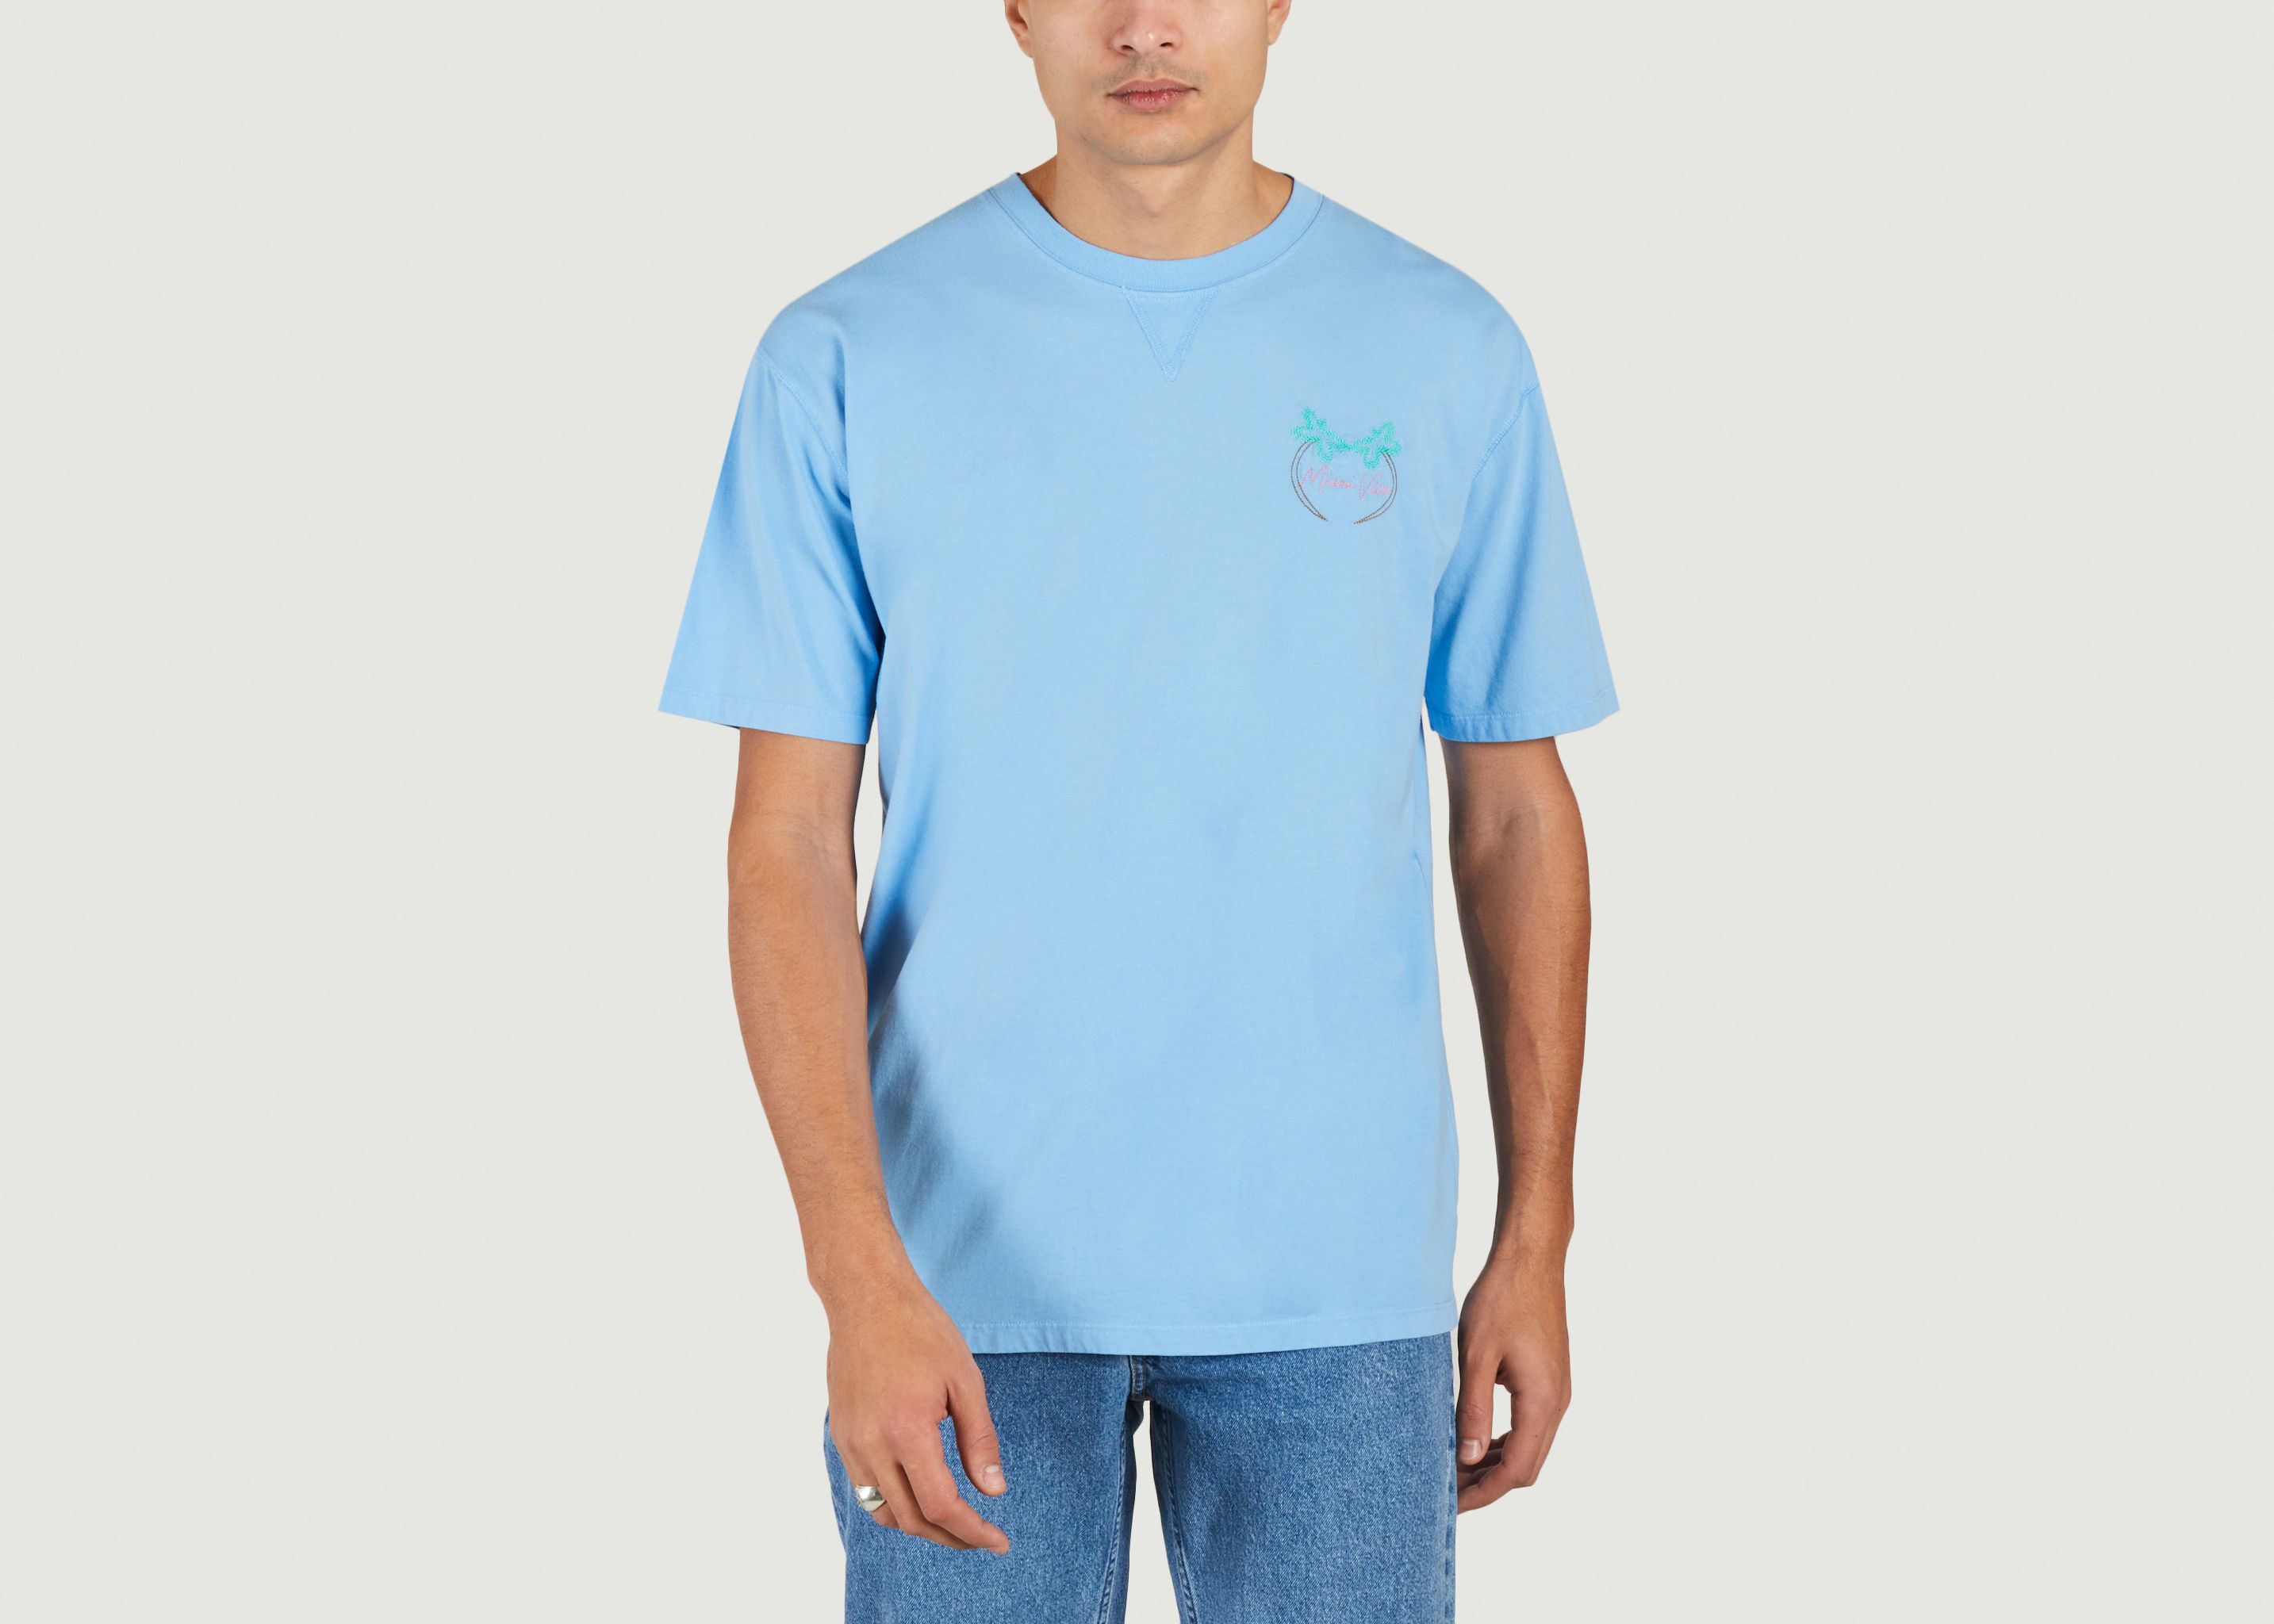 Duras Miami Vice T-shirt - Maison Labiche